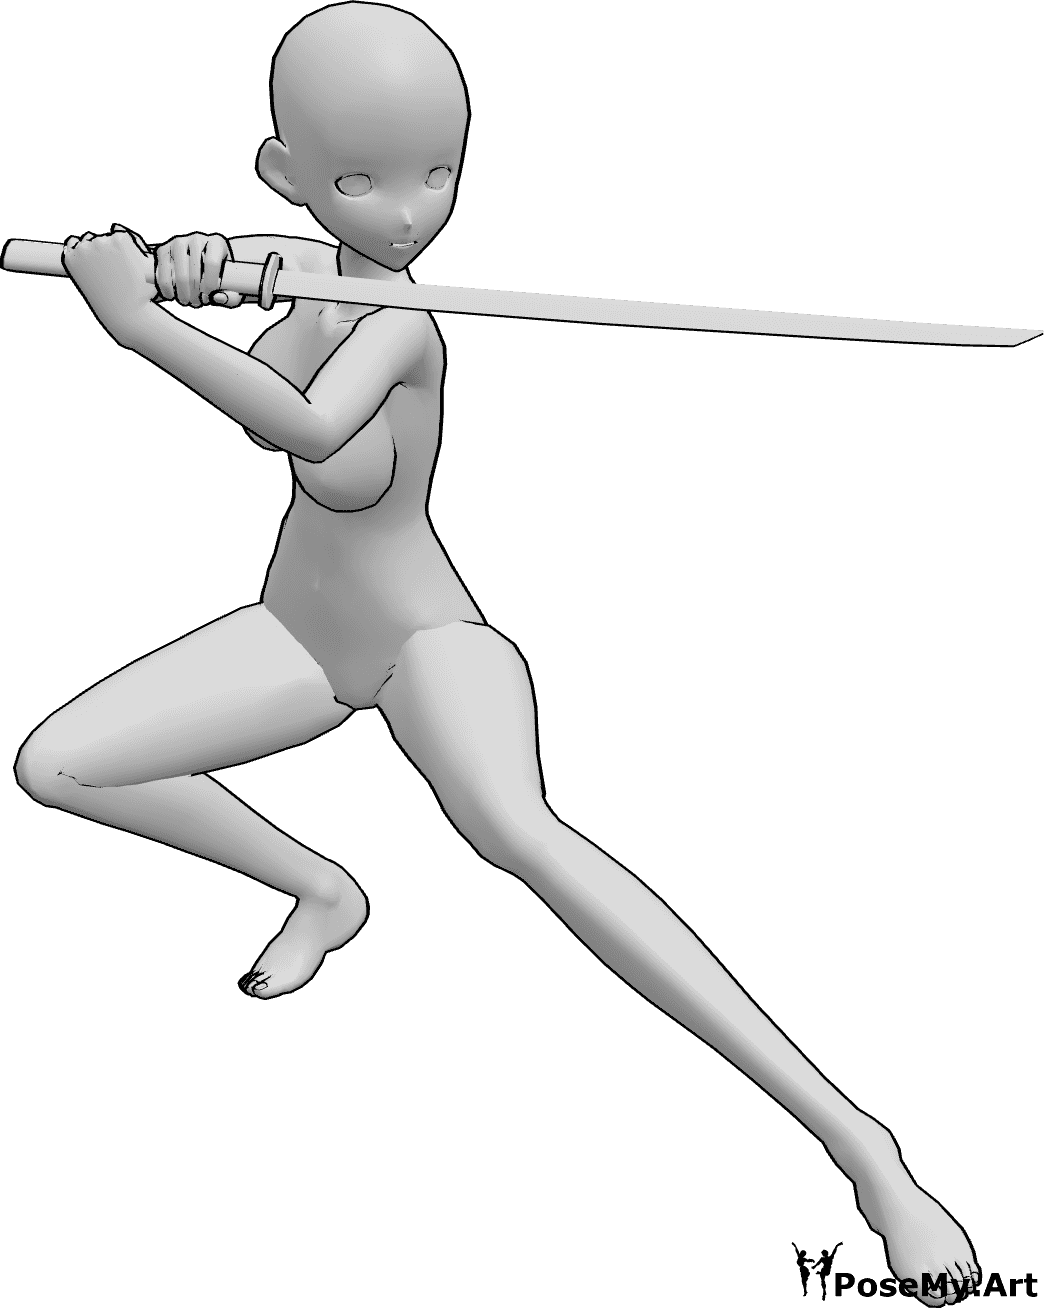 Référence des poses- Anime femme ninja pose - La femme d'animation tient le katana à deux mains, regarde vers la gauche, prête à se battre.